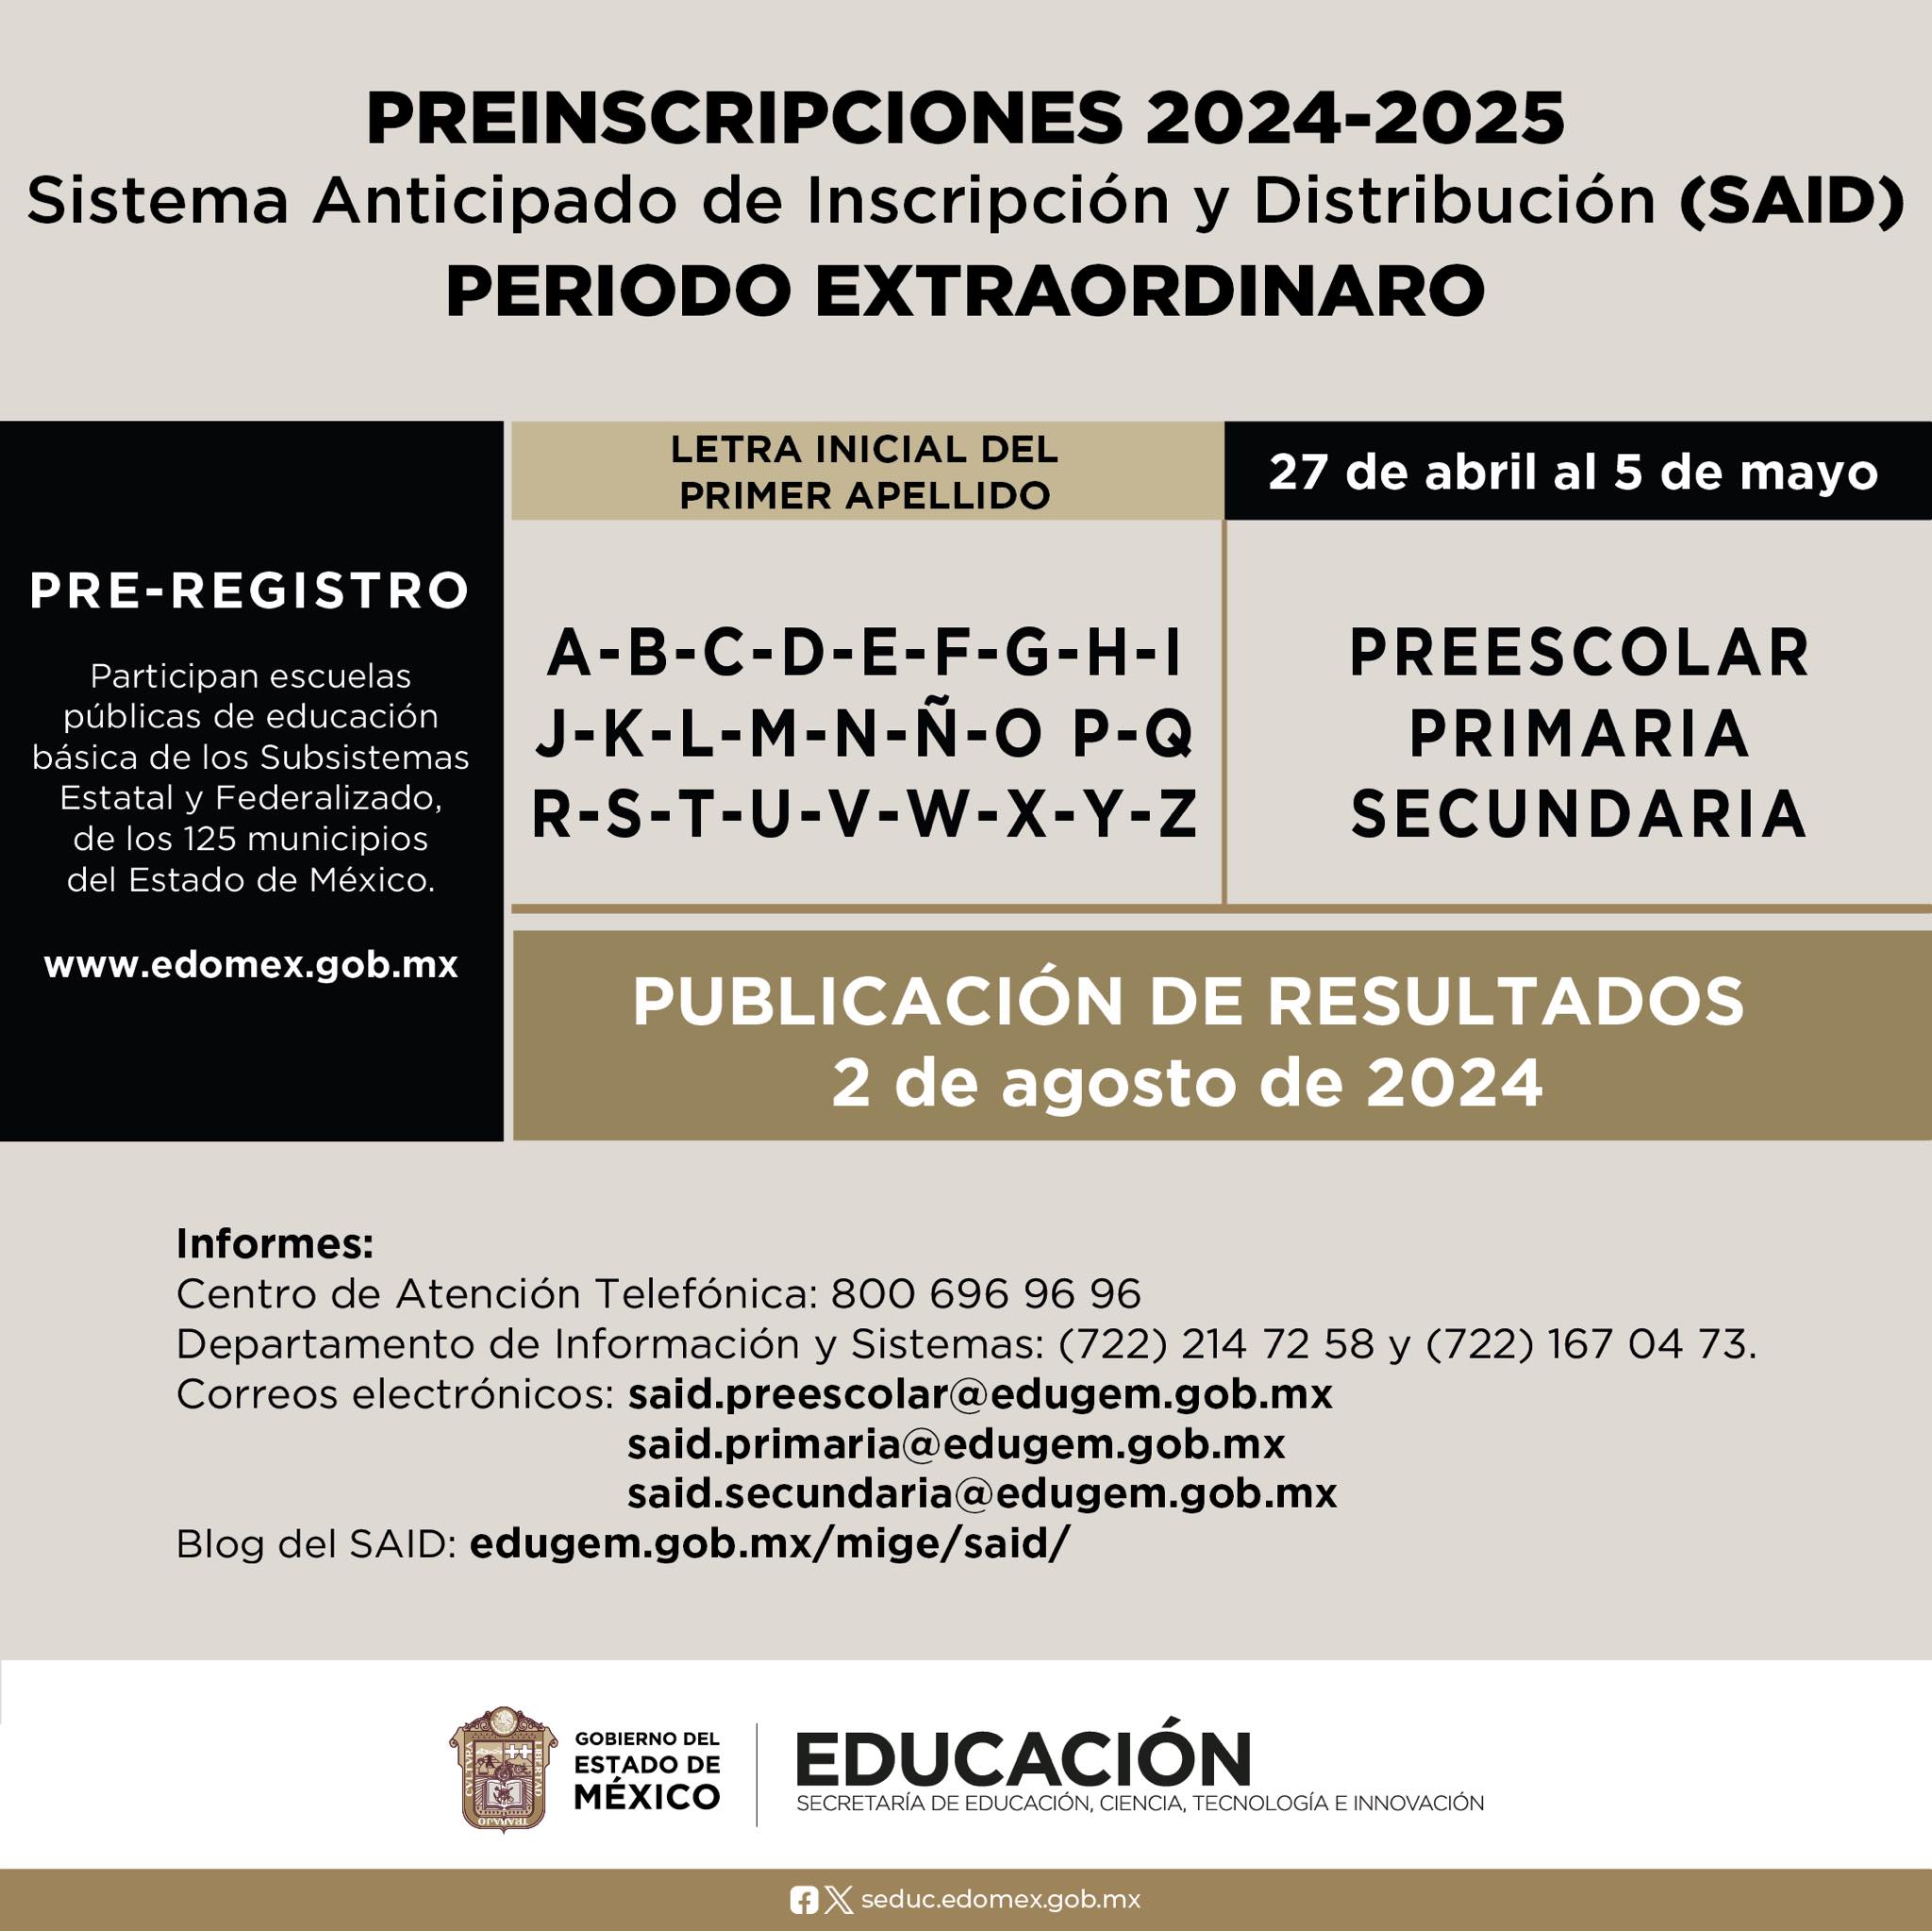 preinscripciones-said-2024-preescolar-primaria-y-secundaria-periodo-extraordinario